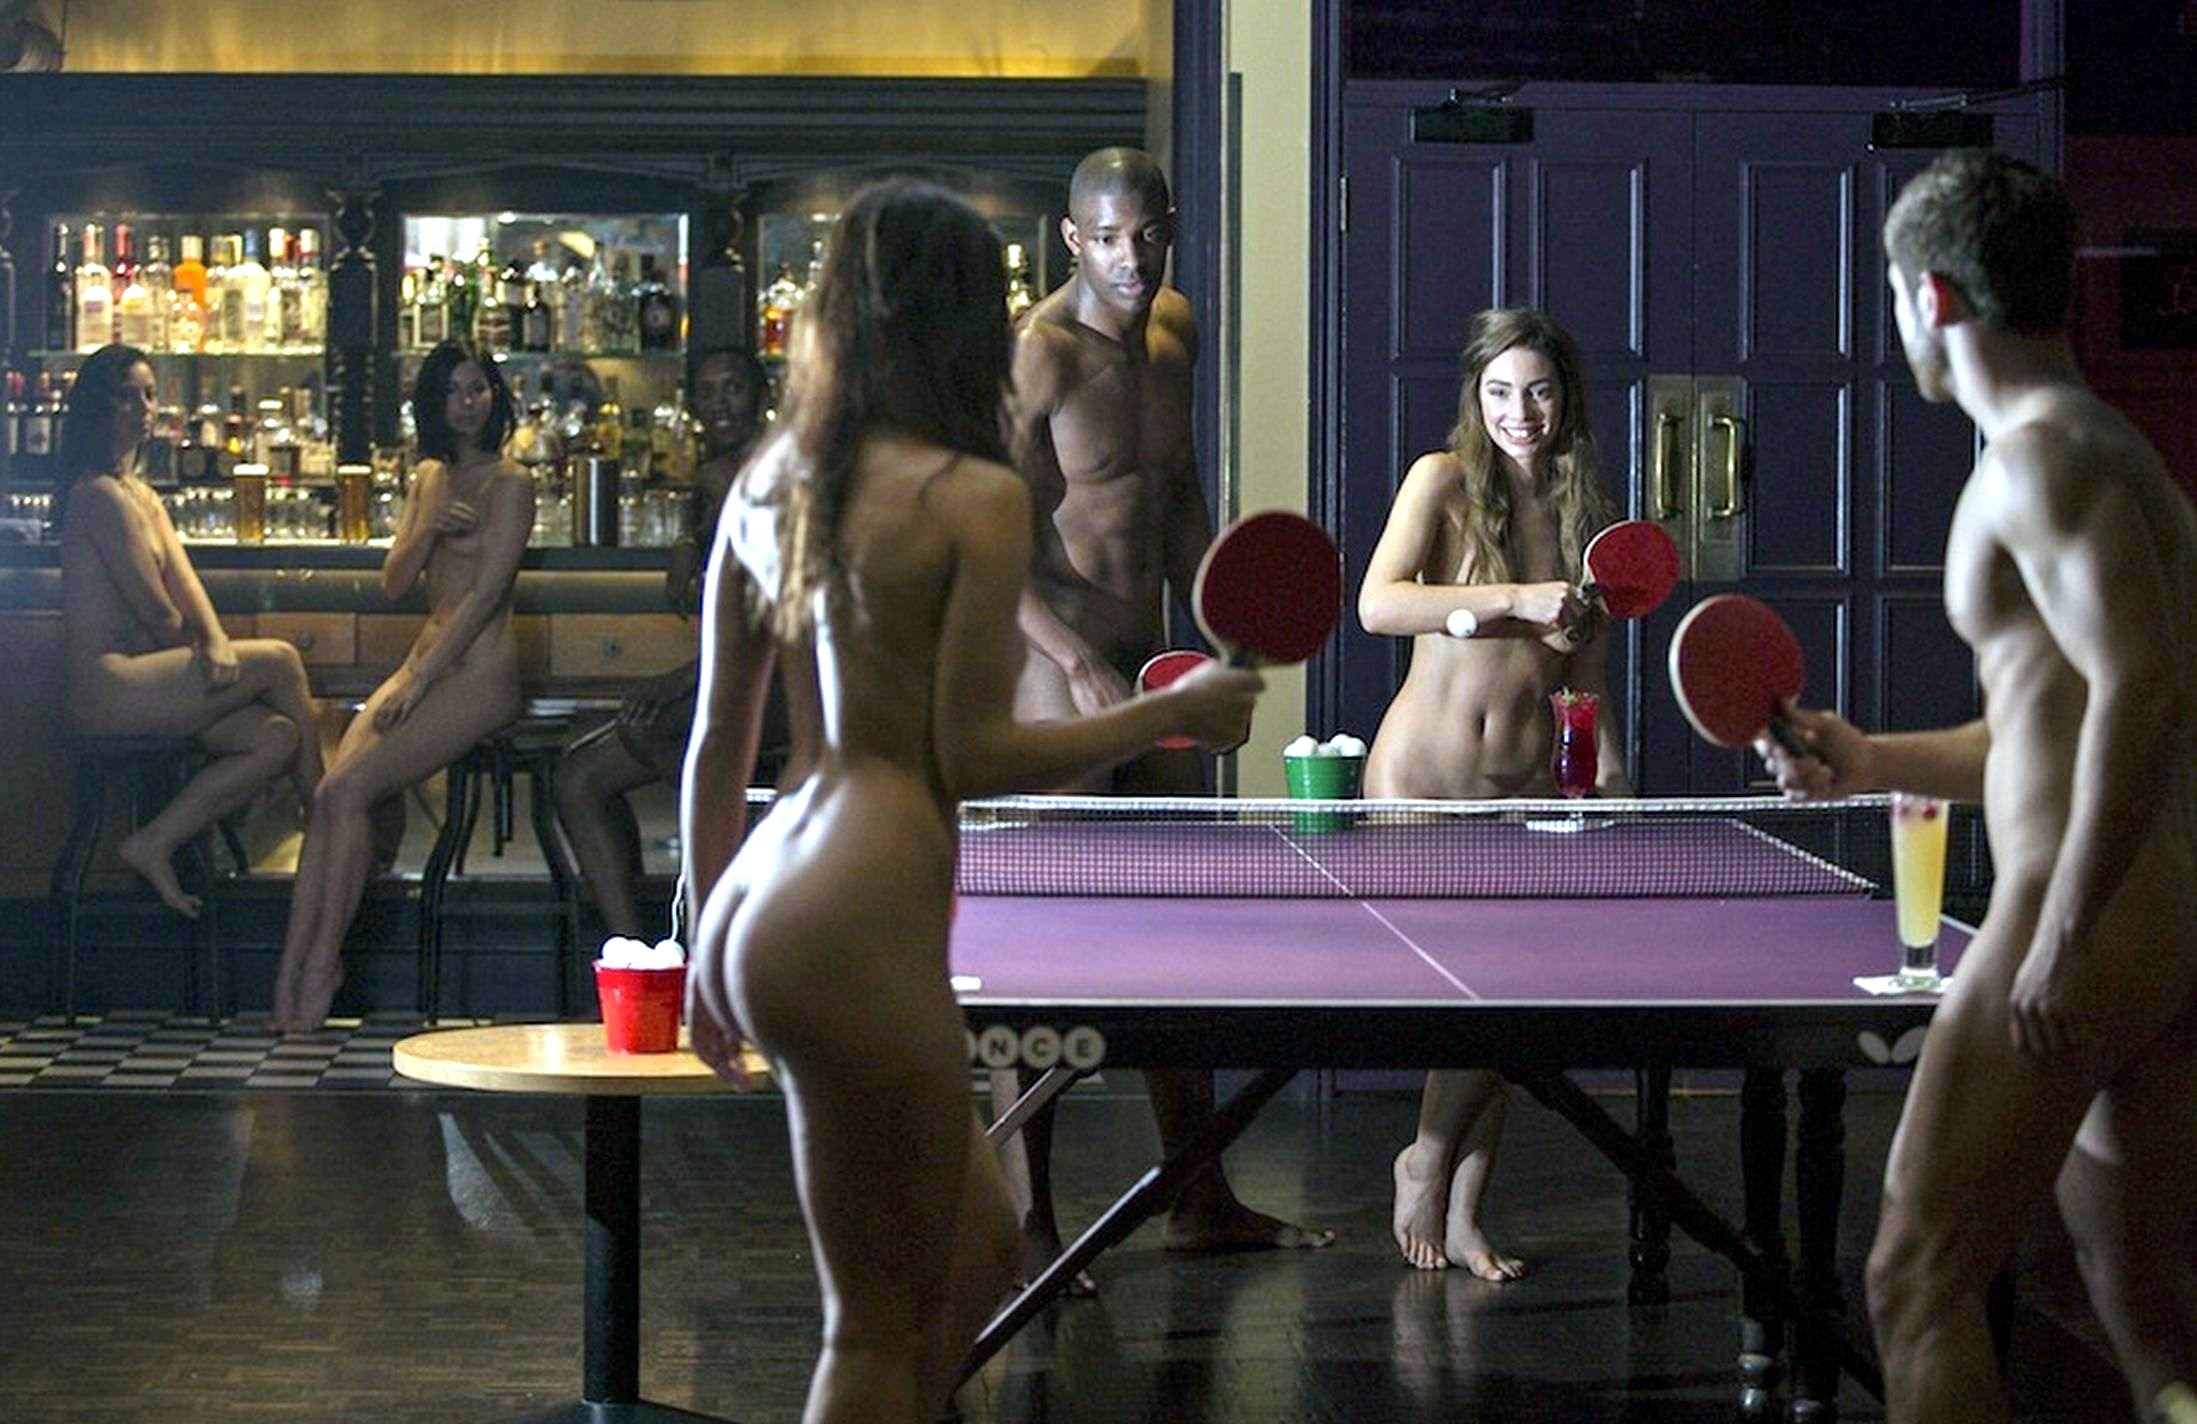 Naked people playing pingpong - Alrincon.com